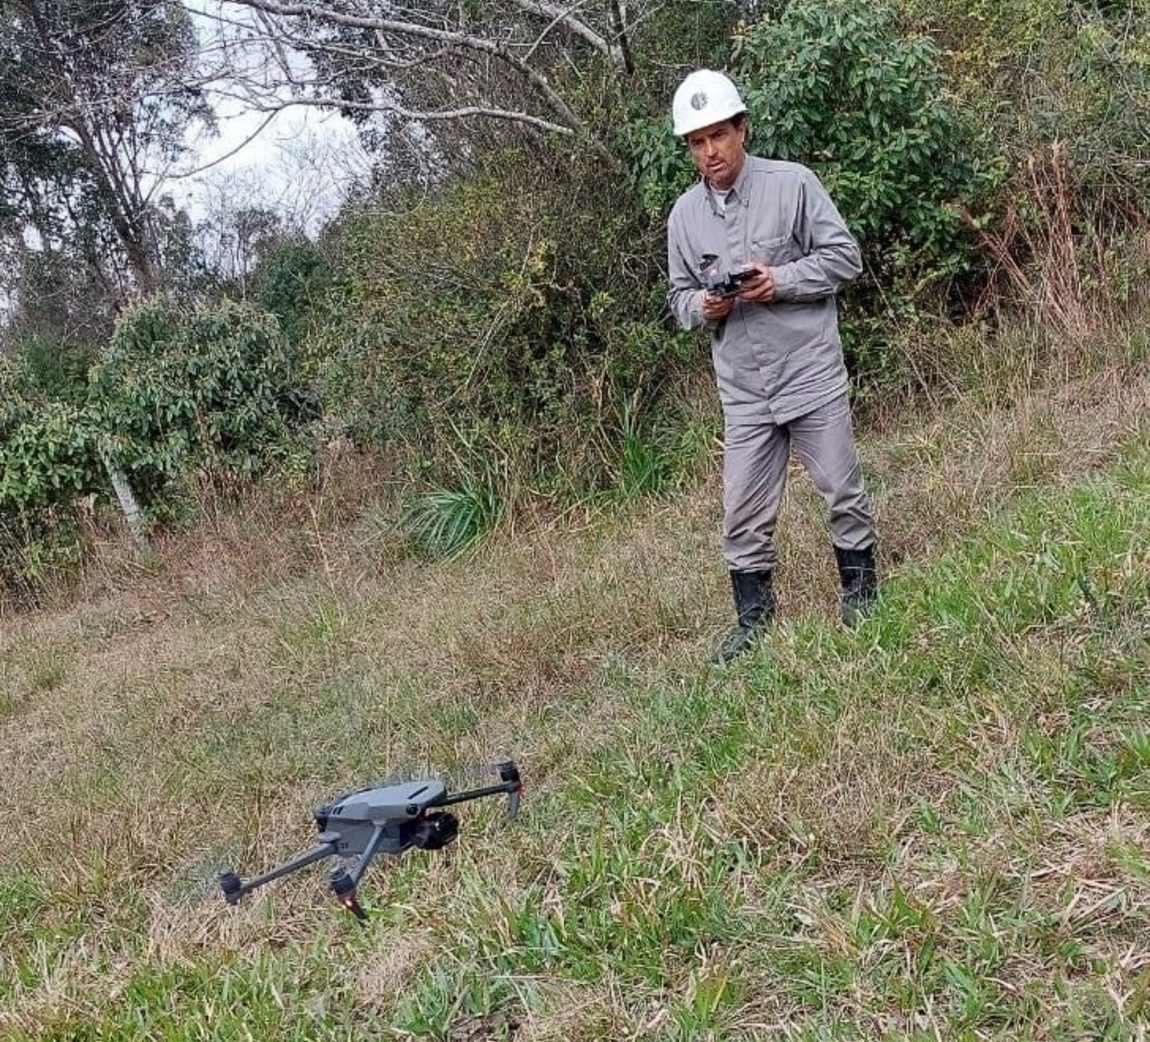 CEEE Equatorial forma 13 pilotos de drones para inspeções de linhas de energia (1)